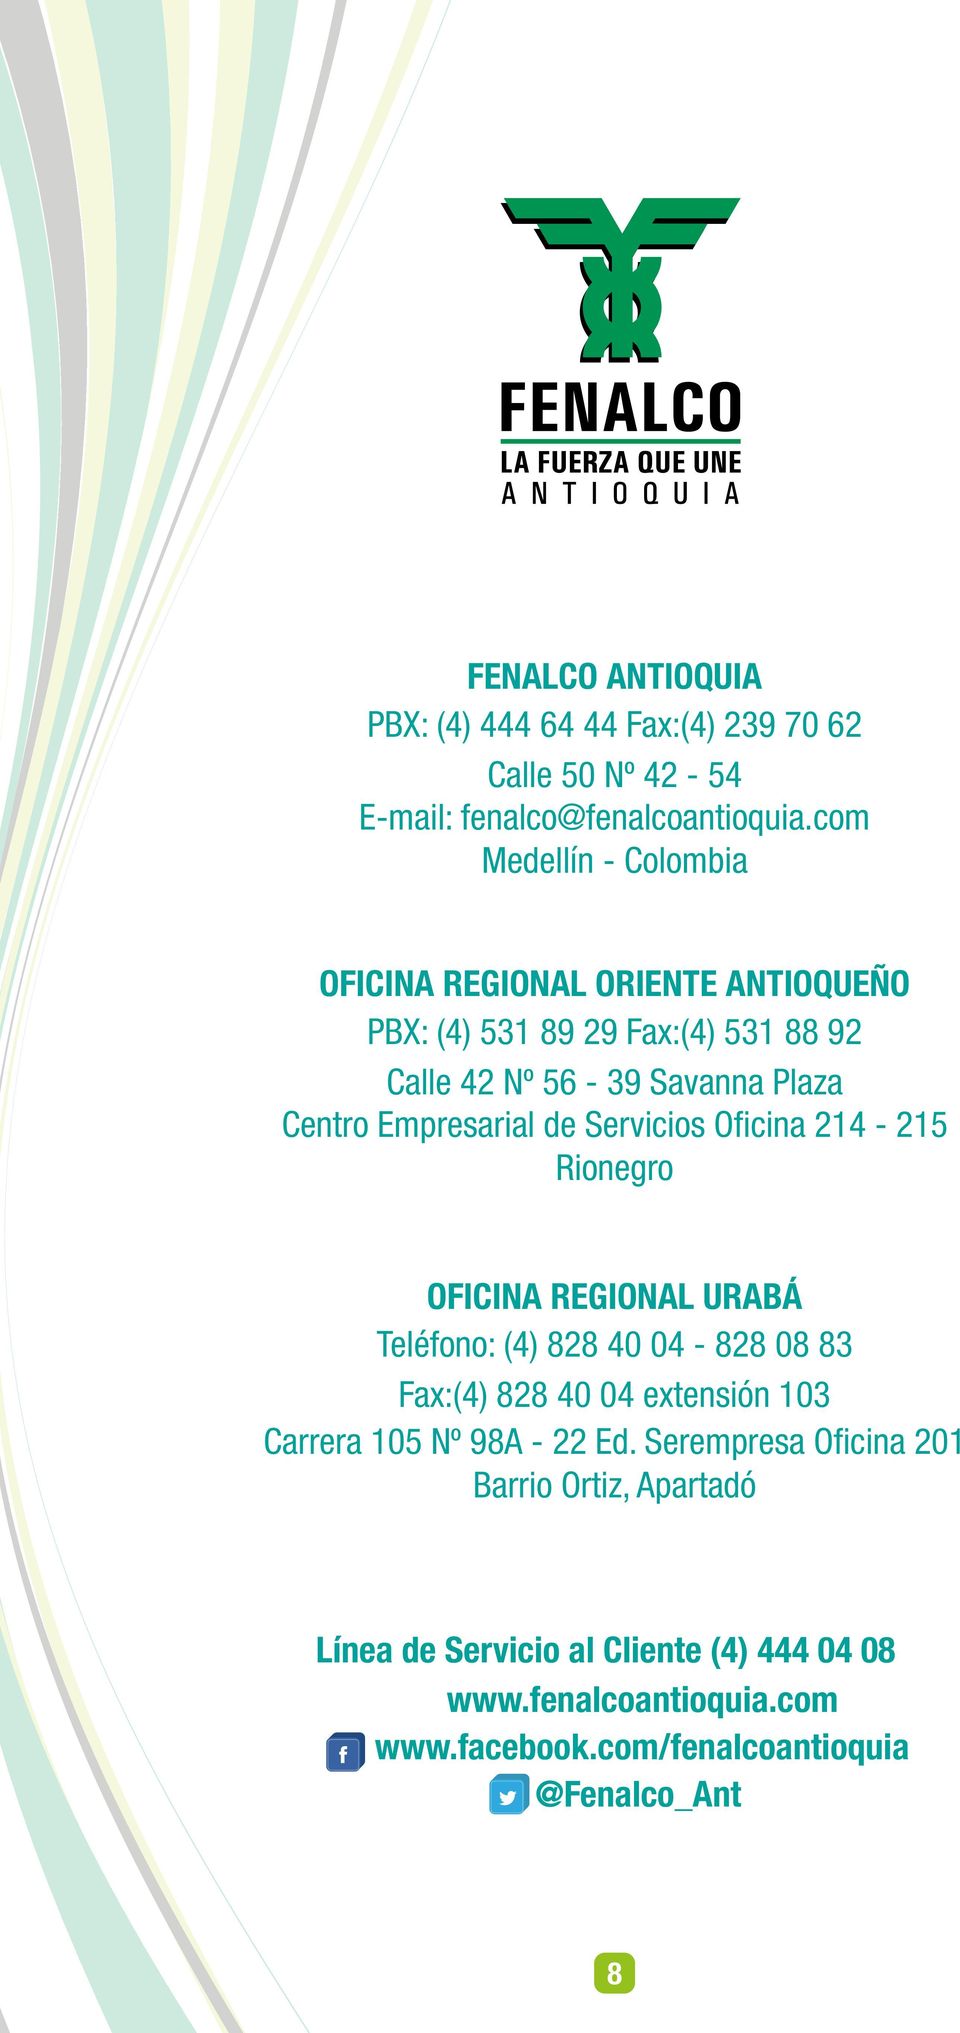 Empresarial de Servicios Oficina 214-215 Rionegro OFICINA REGIONAL URABÁ Teléfono: (4) 828 40 04-828 08 83 Fax:(4) 828 40 04 extensión 103